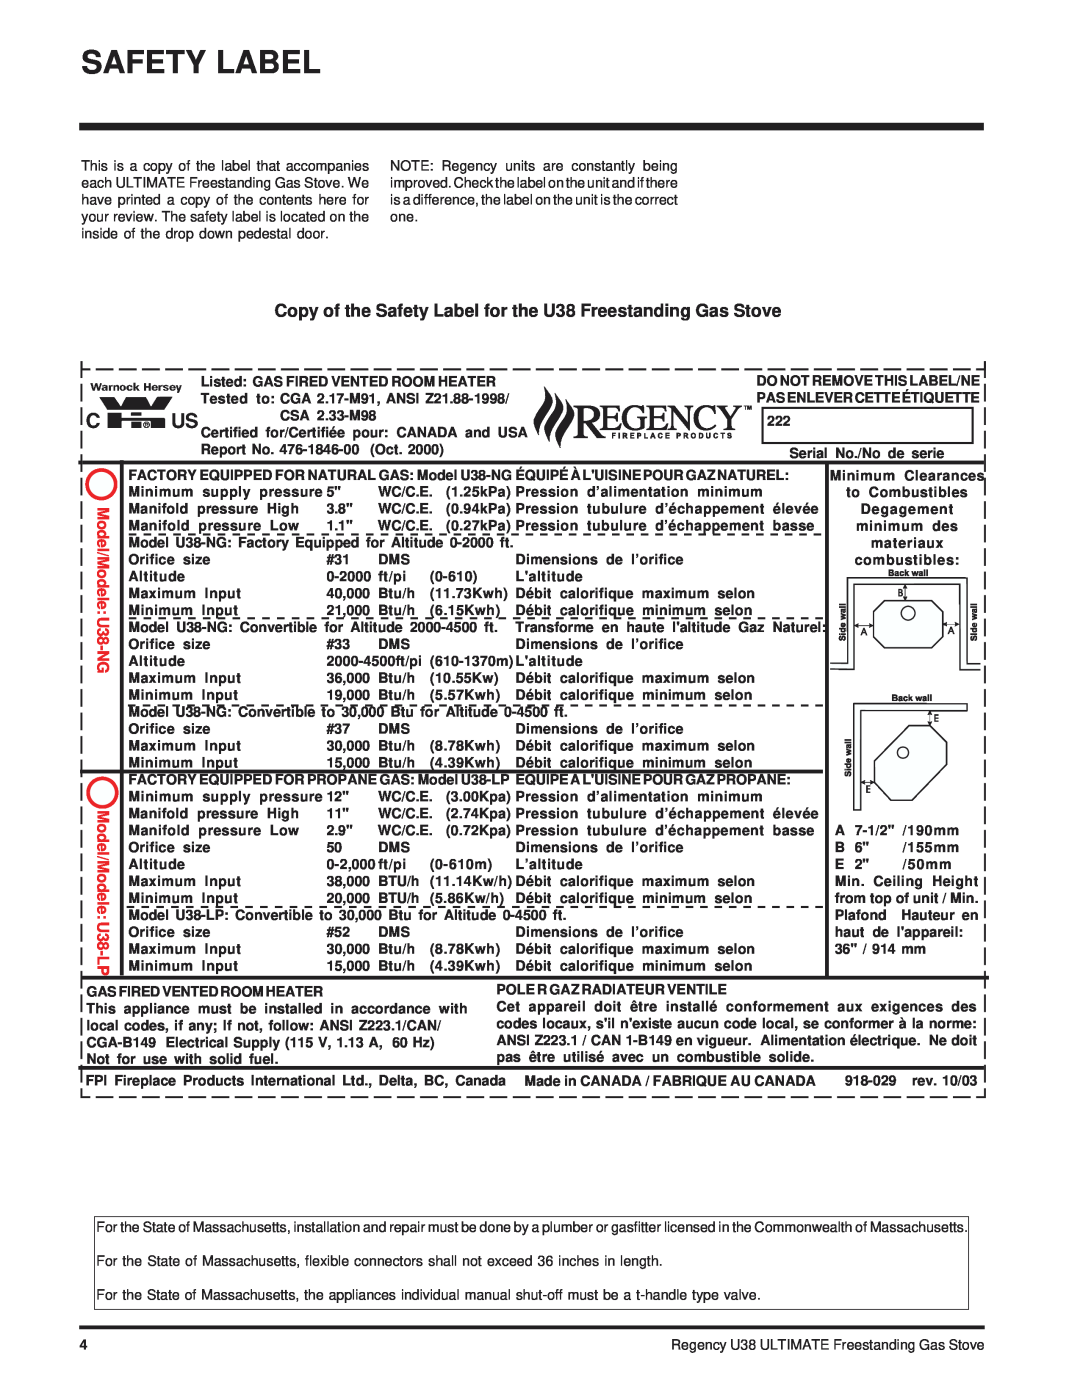 Regency Wraps installation manual Safety Label, Model/Modele U38-NG Model/Modele U38-LP 